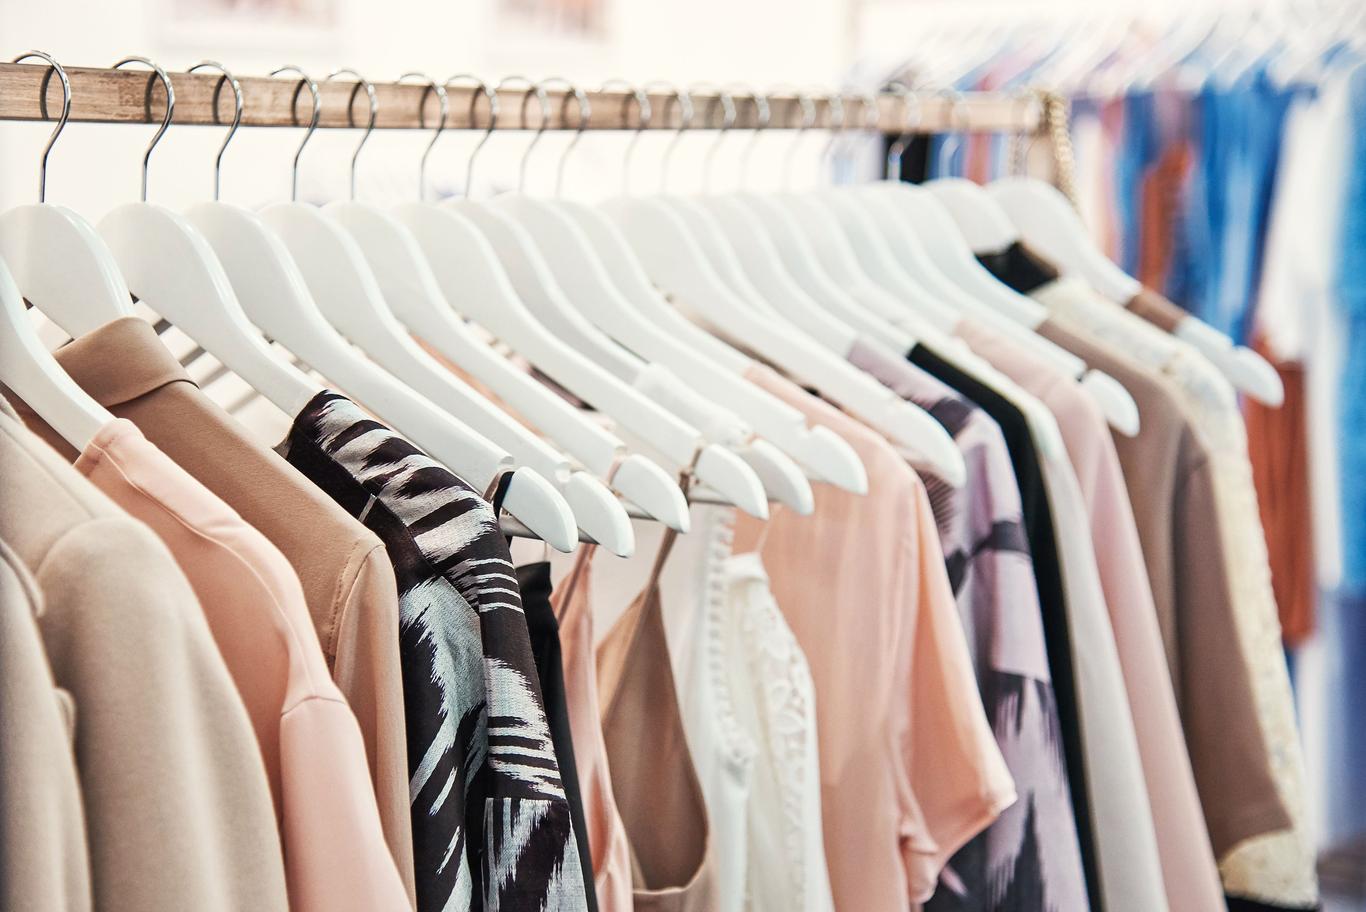 ILP BALTIC OÜ müüb KiloMax nimelistes kauplustes kasutatud riideid. Eestis on ettevõte registreeritud selle aasta alguses ning kohe on tulnud ka käive. Asutatud: 2018. aastal Käive 2018. aasta I kvartalis: 78 556